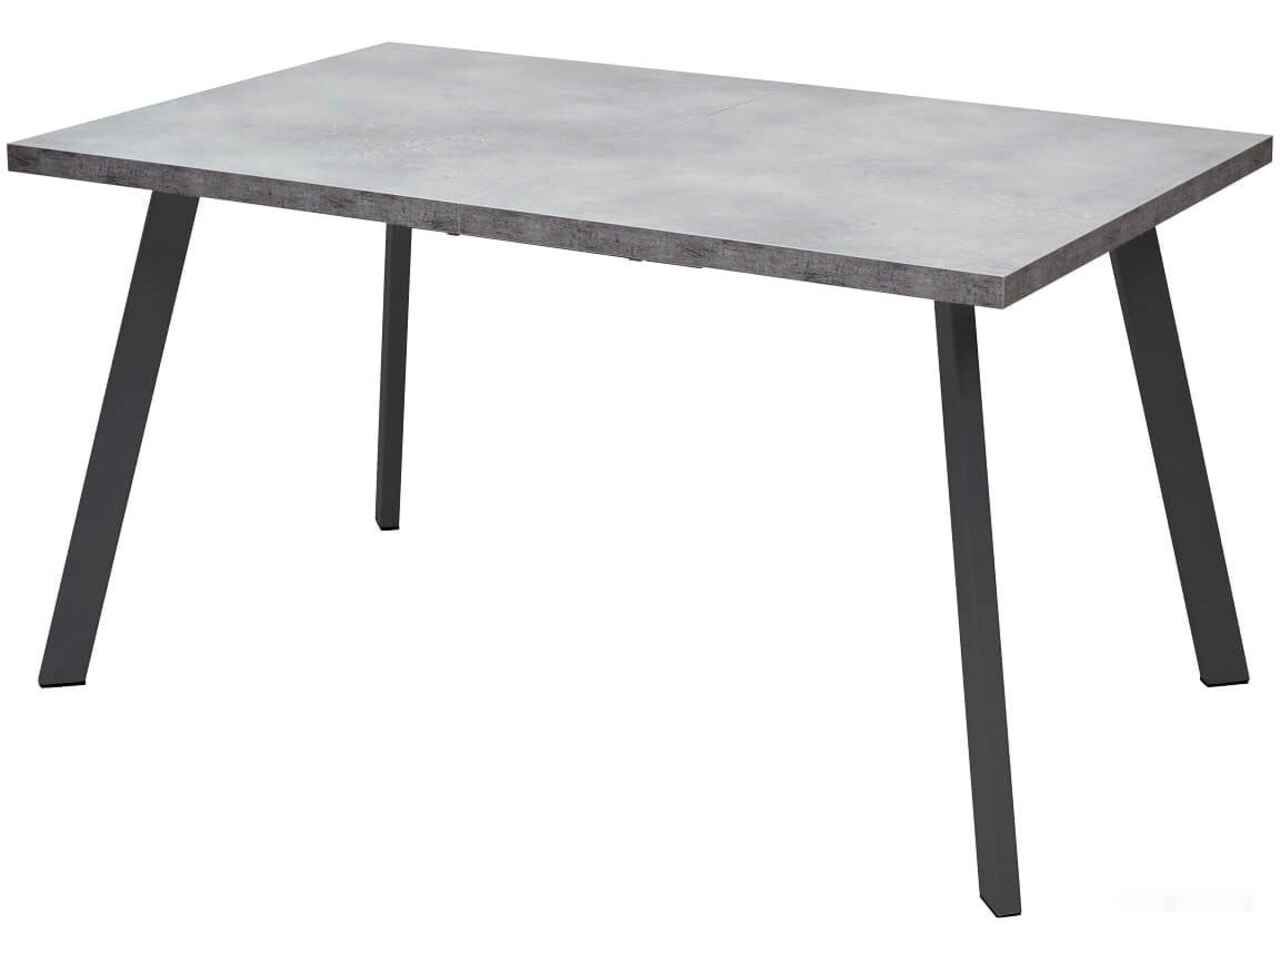 Кухонный стол Mebelart Brick M 140 (бетон портленд/черный)